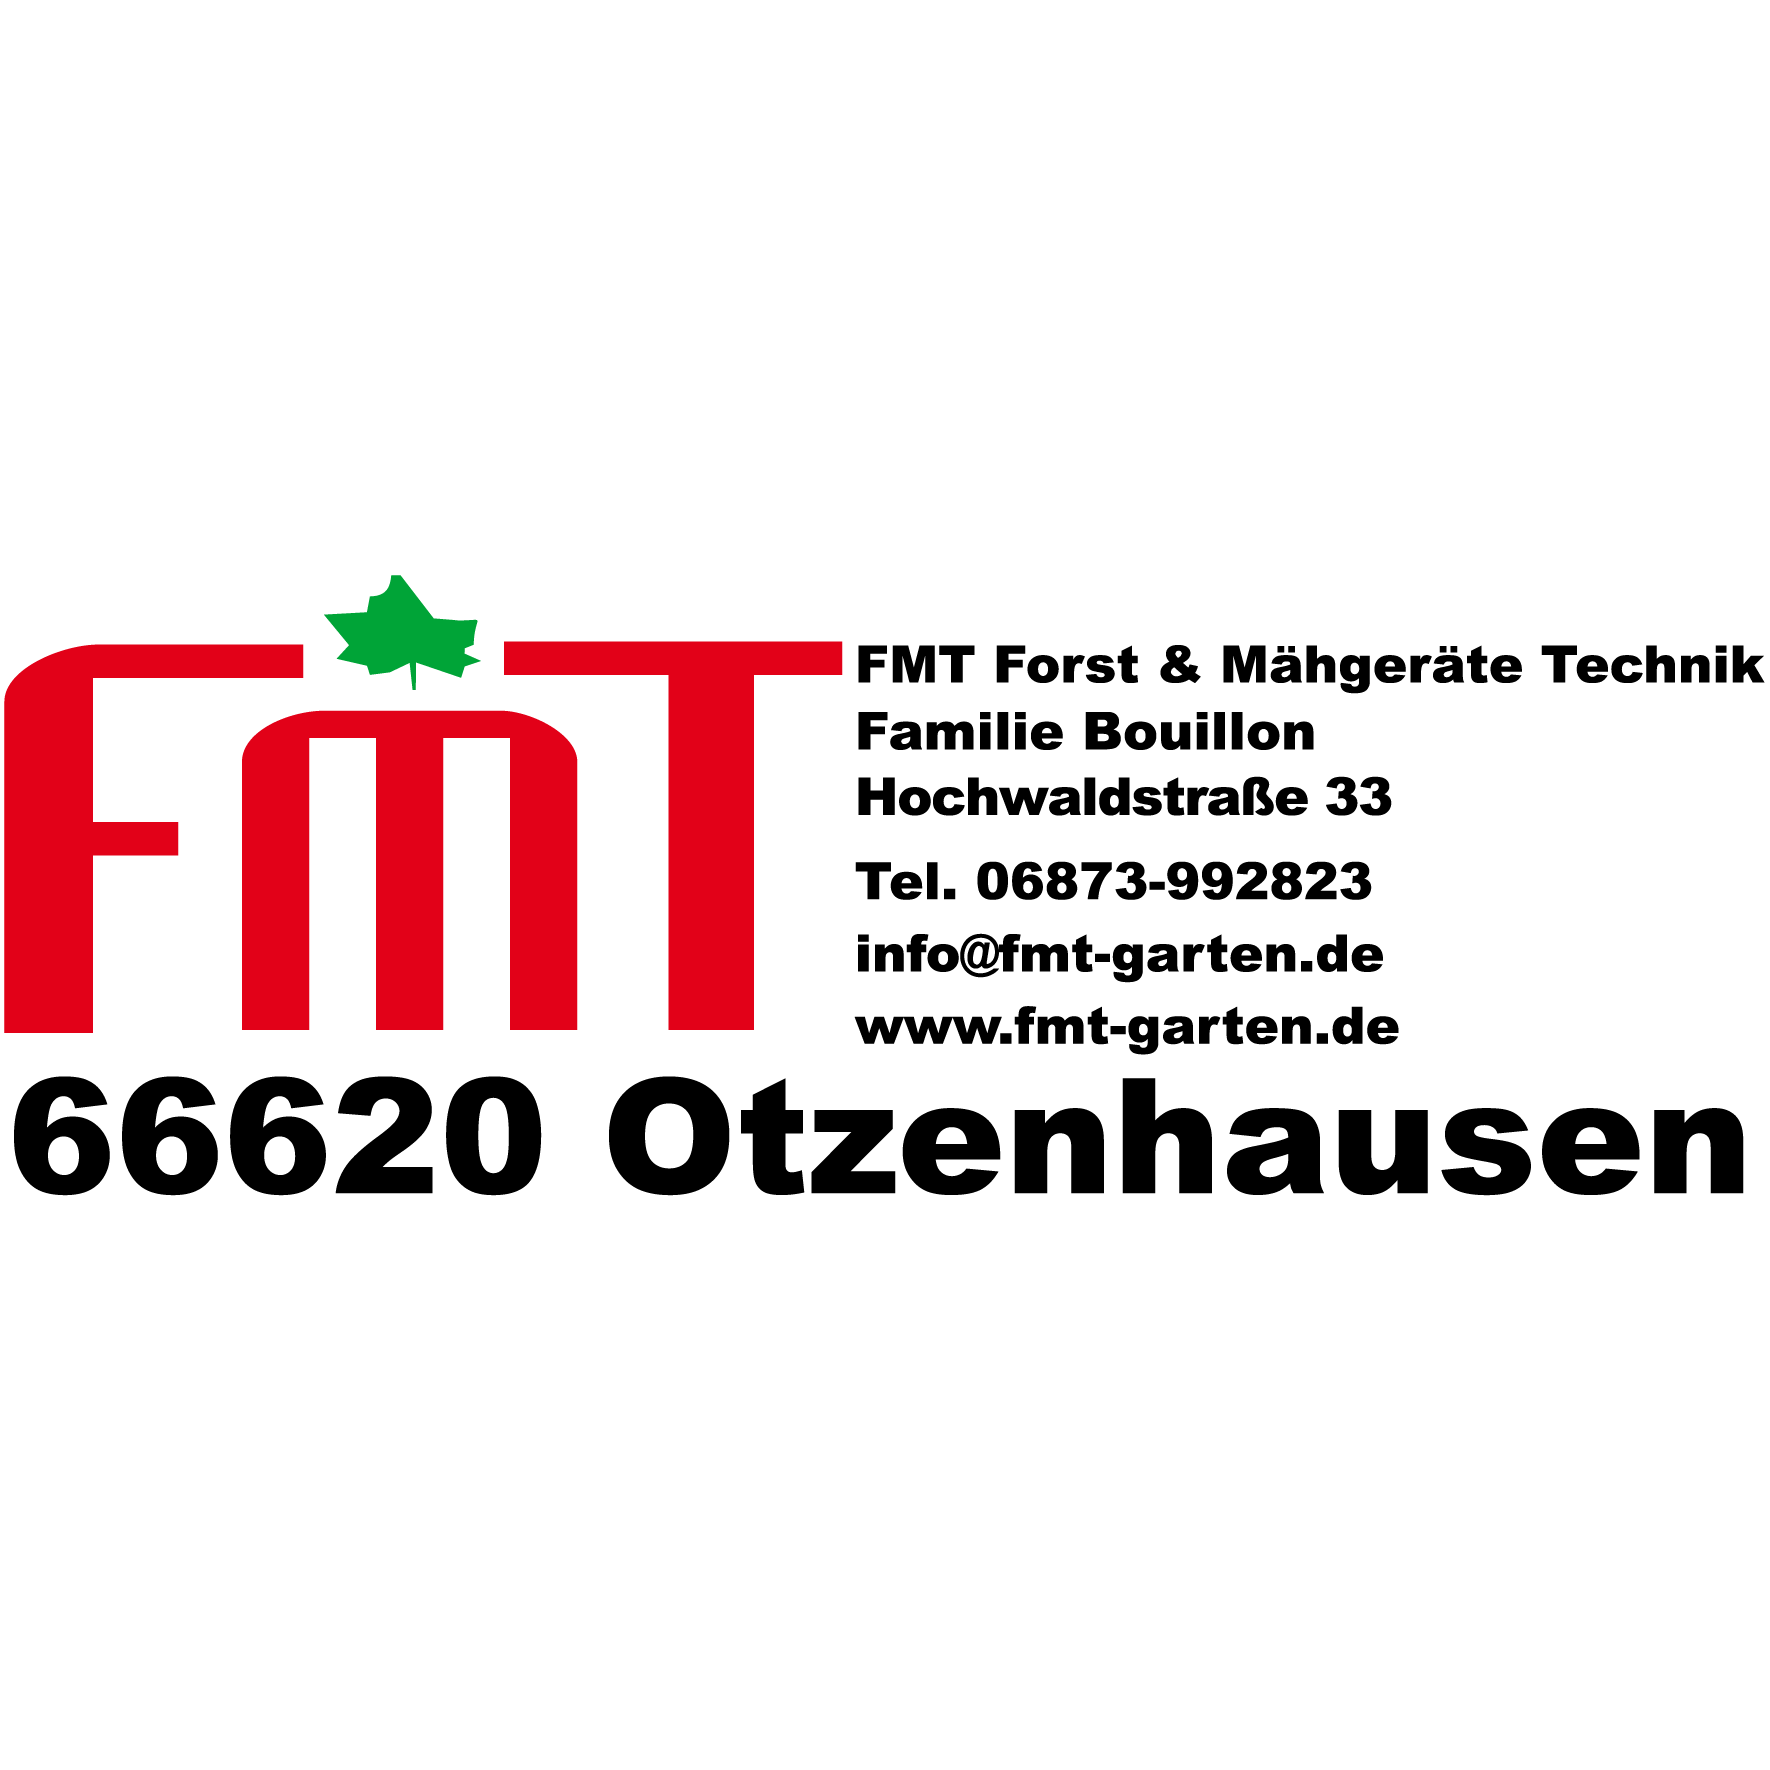 FMT Forst- & Mähgeräte Technik GmbH Logo